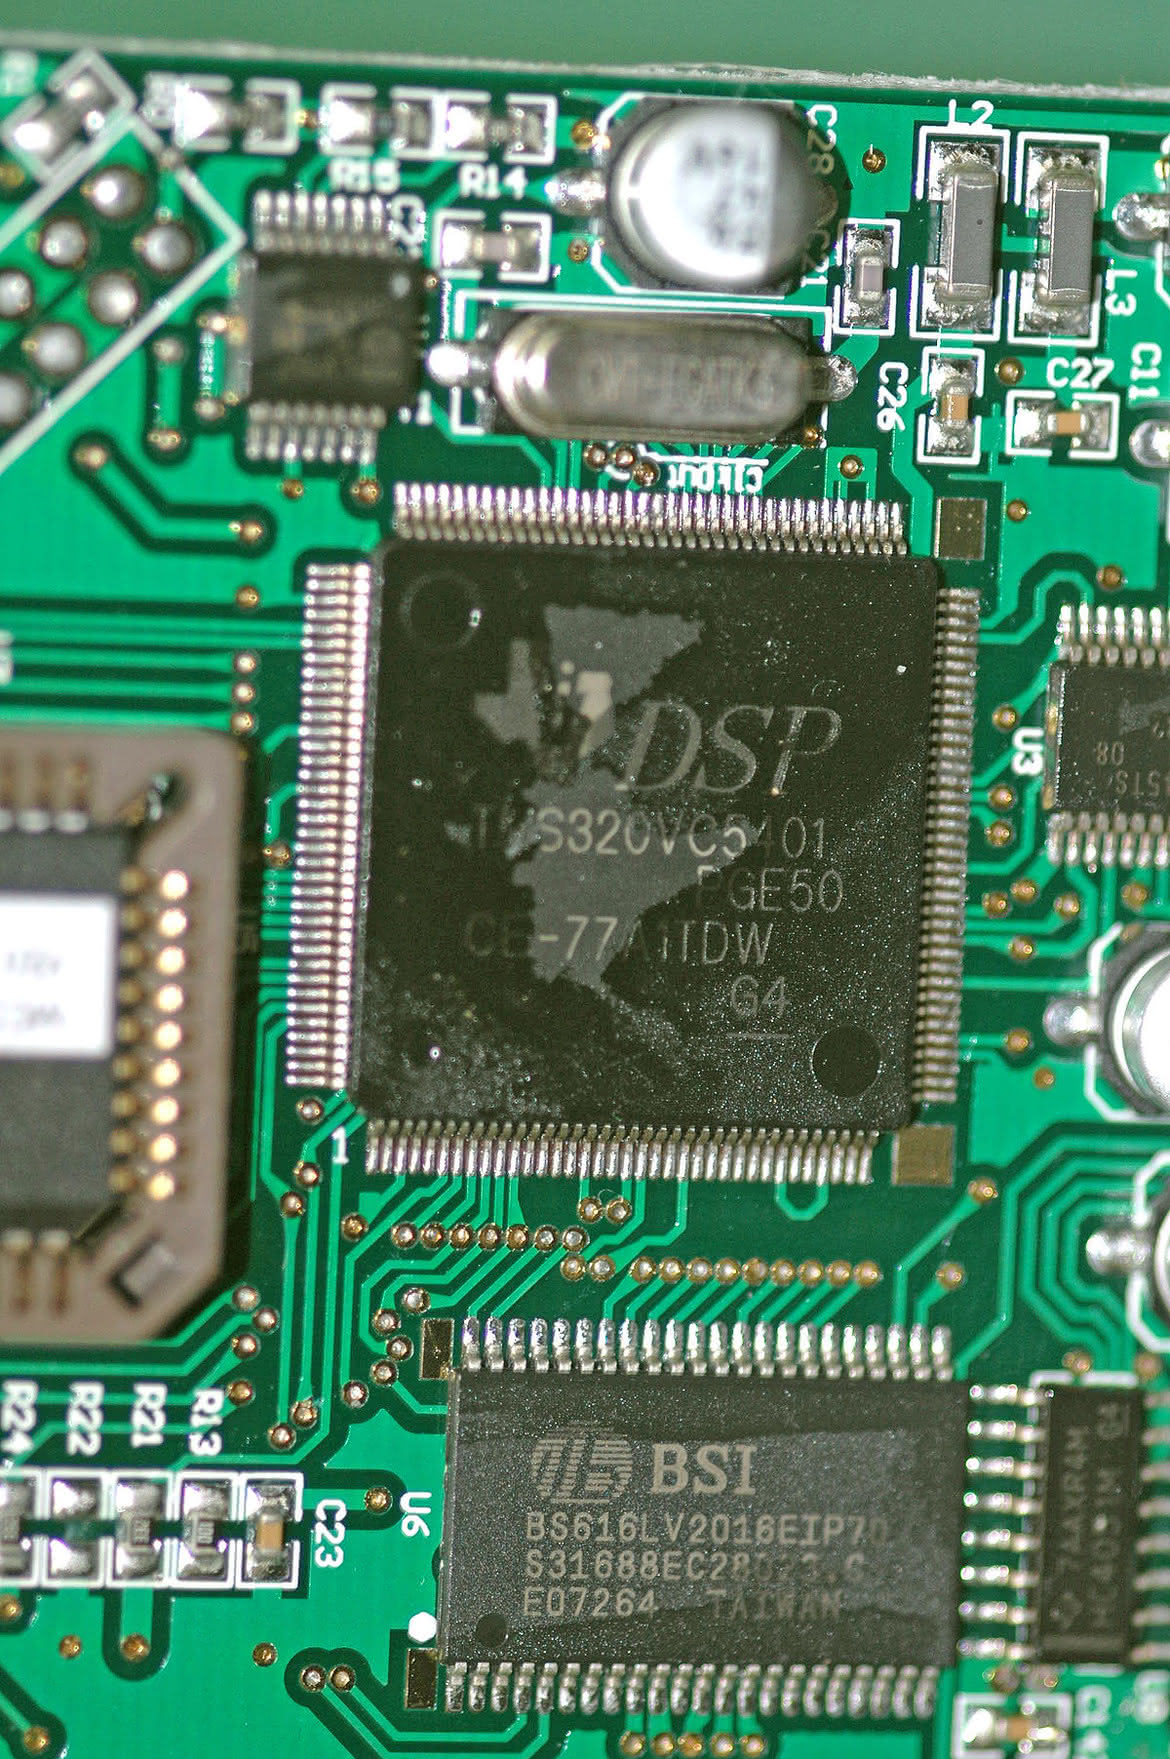 FPGA kontra DSP - Czym różni się jeden od drugiego?